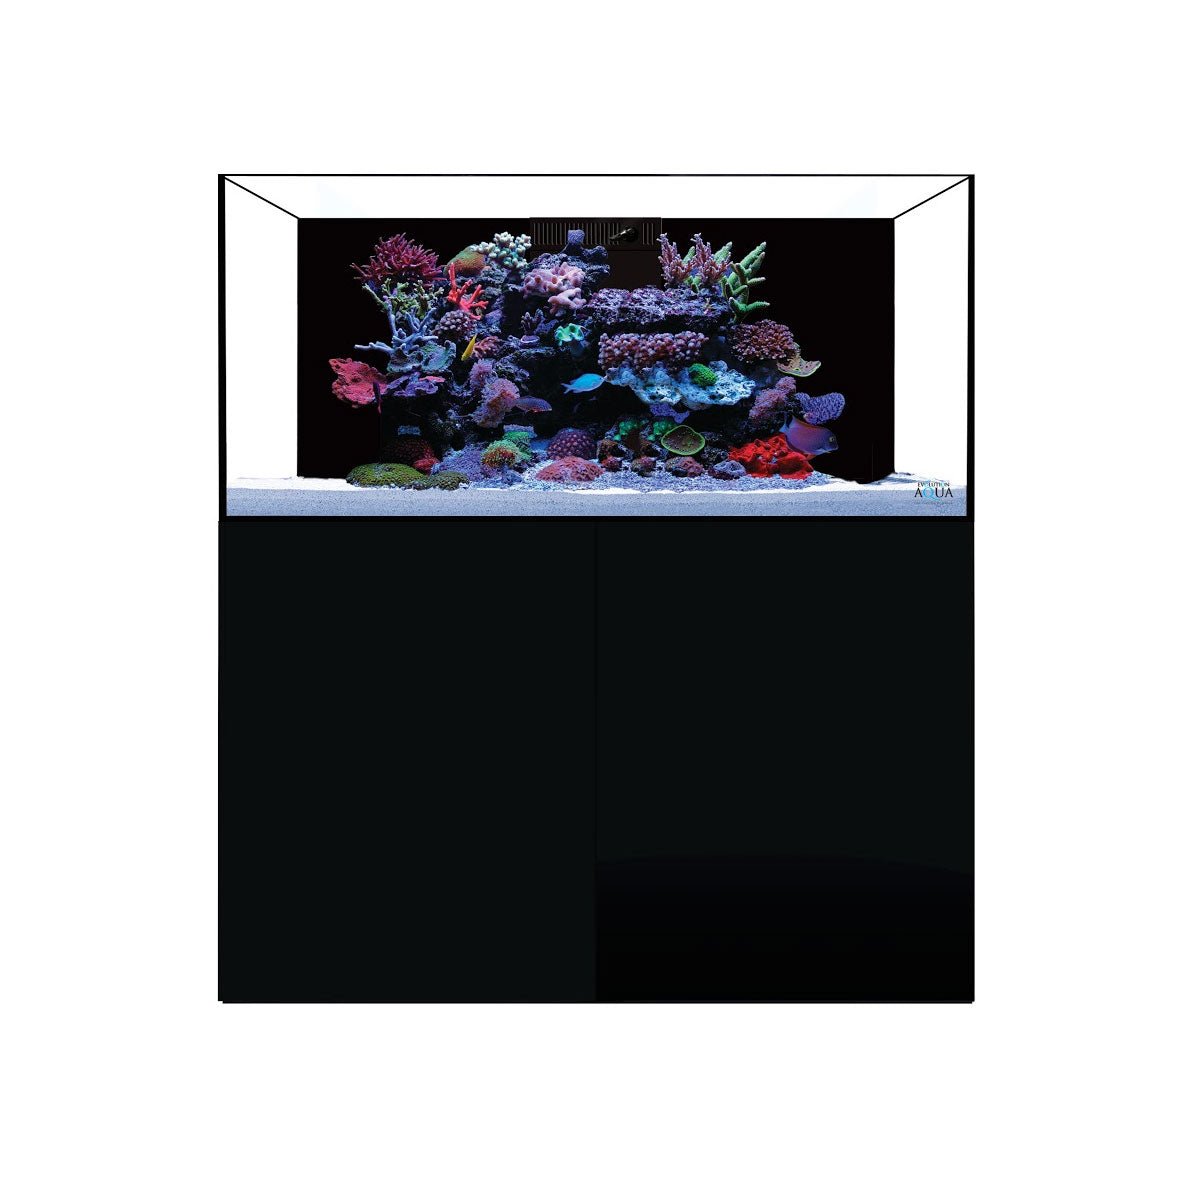 D-D Aqua-Pro Reef 1200 - Natural Oak - AquaFrame Cabinet - Charterhouse Aquatics